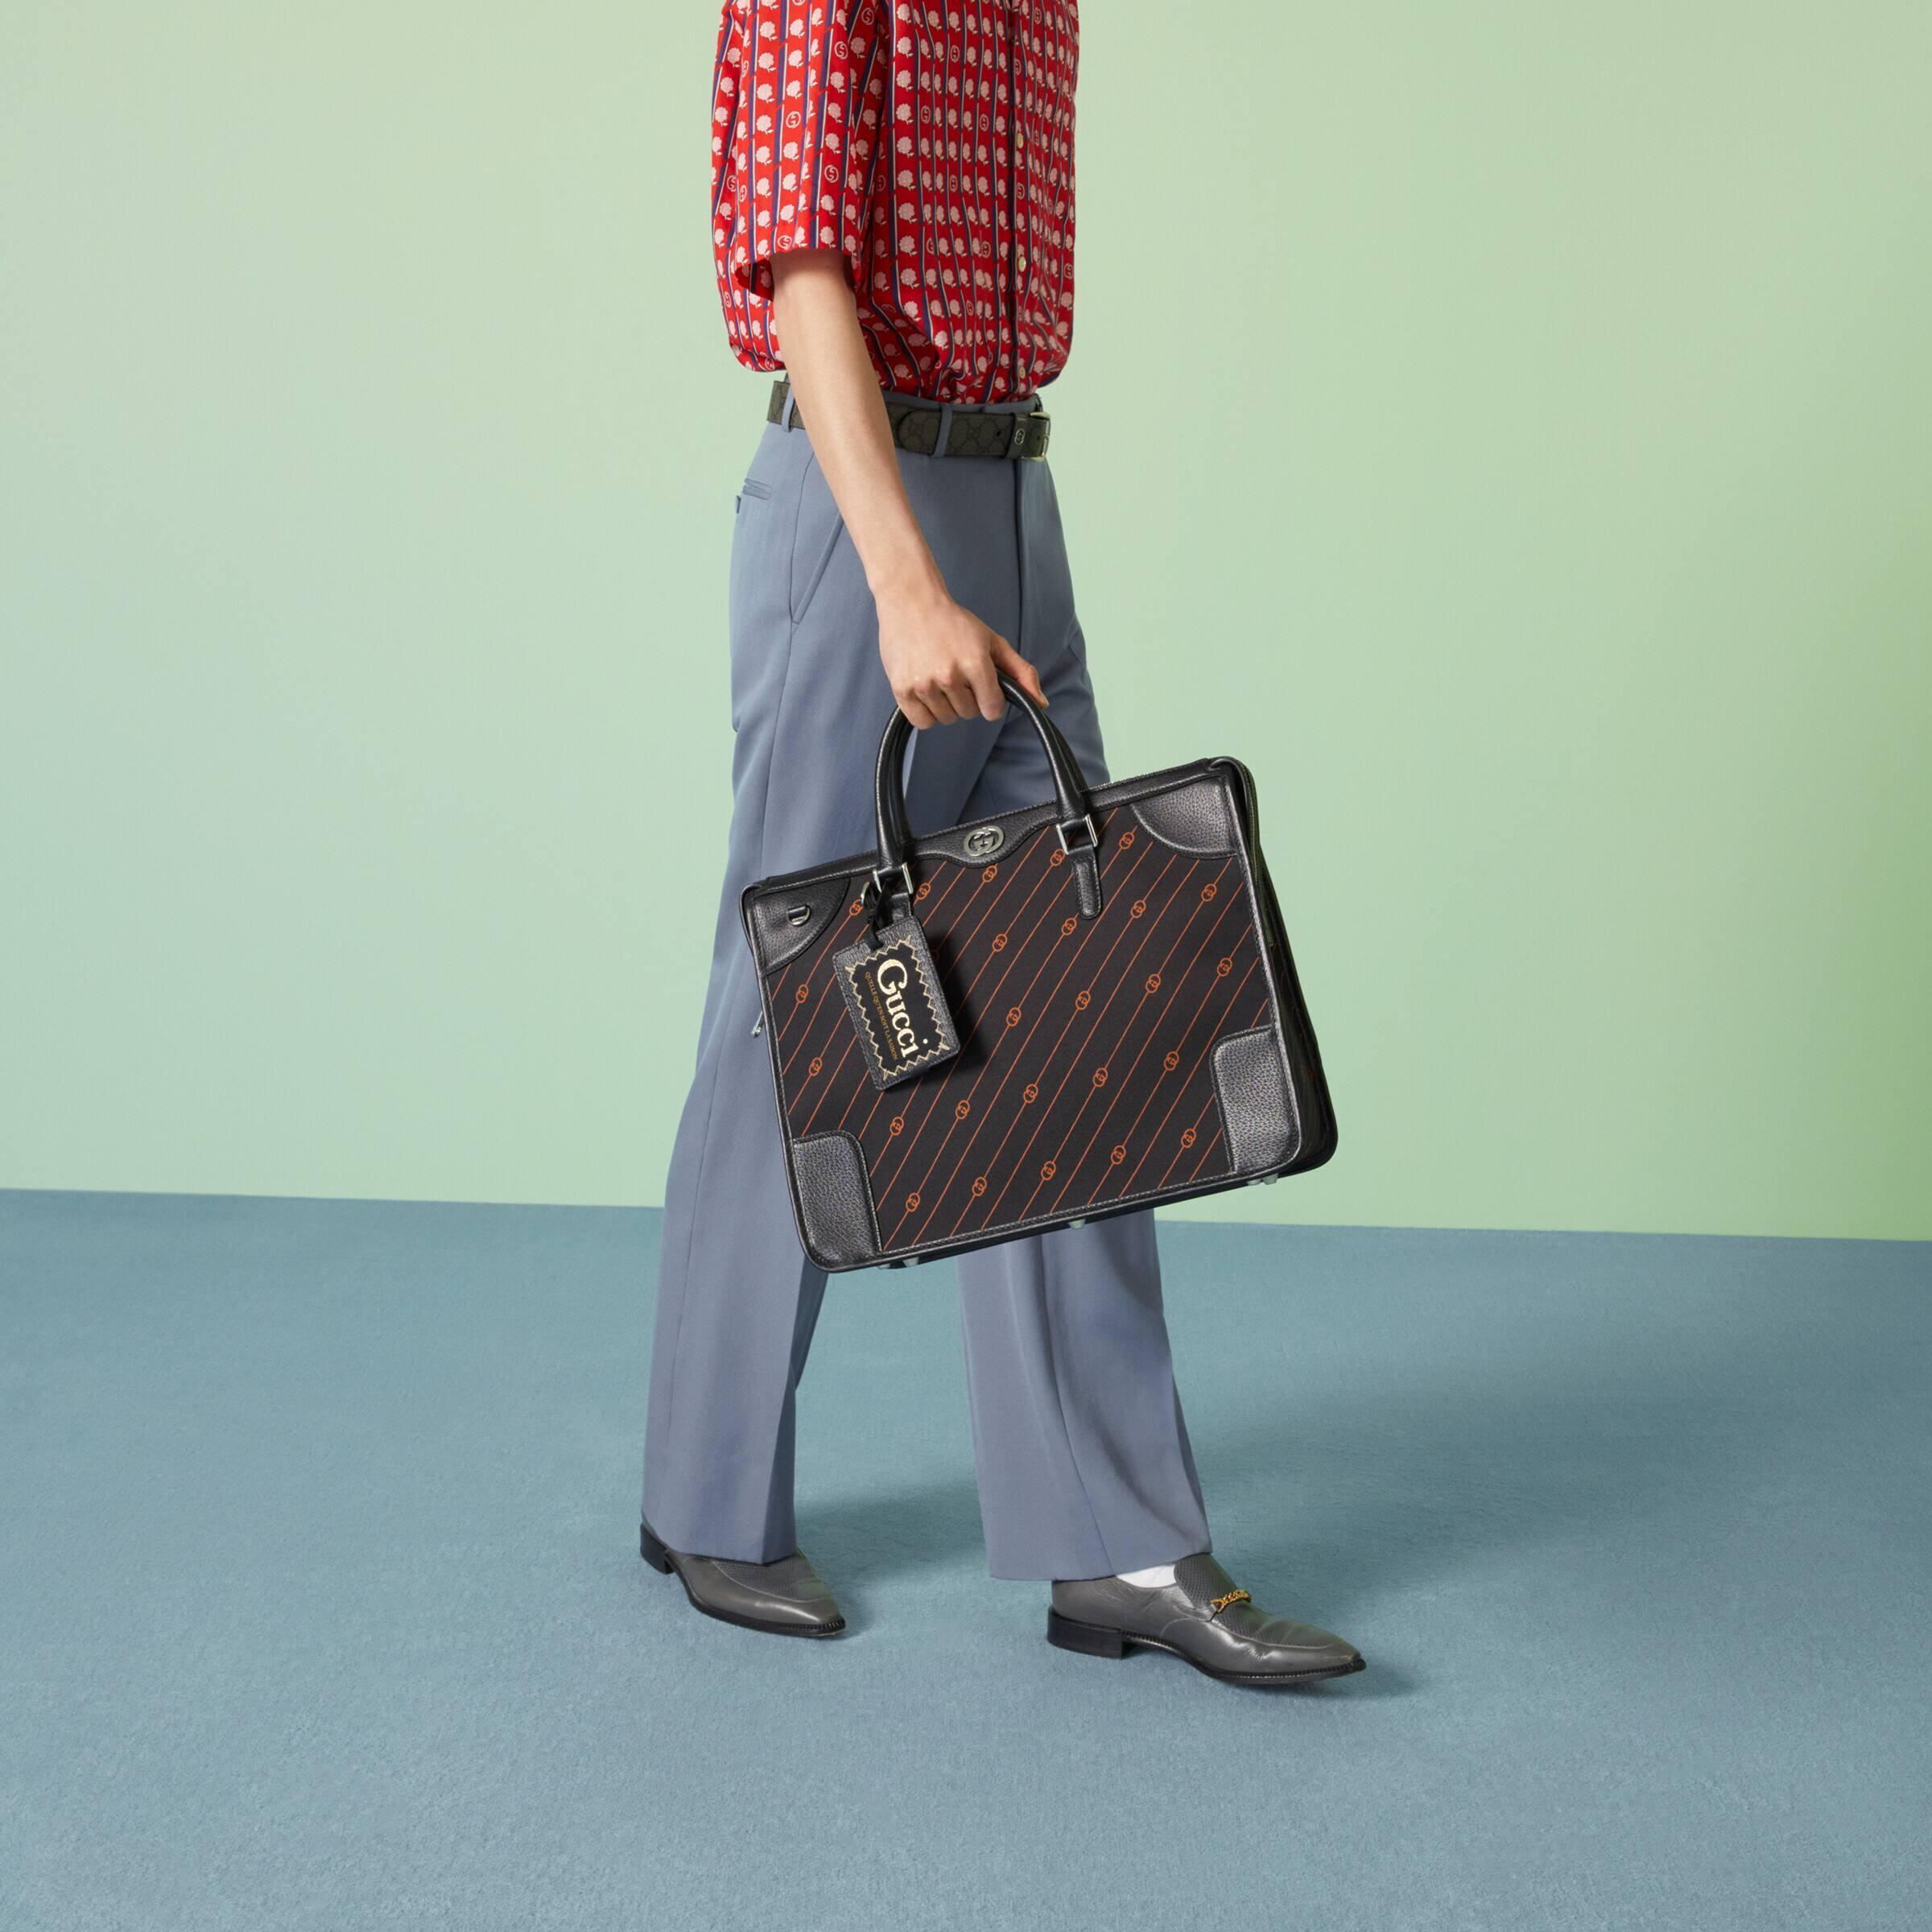 Gucci Interlocking G Monogram Laptop Bag in Brown for Men